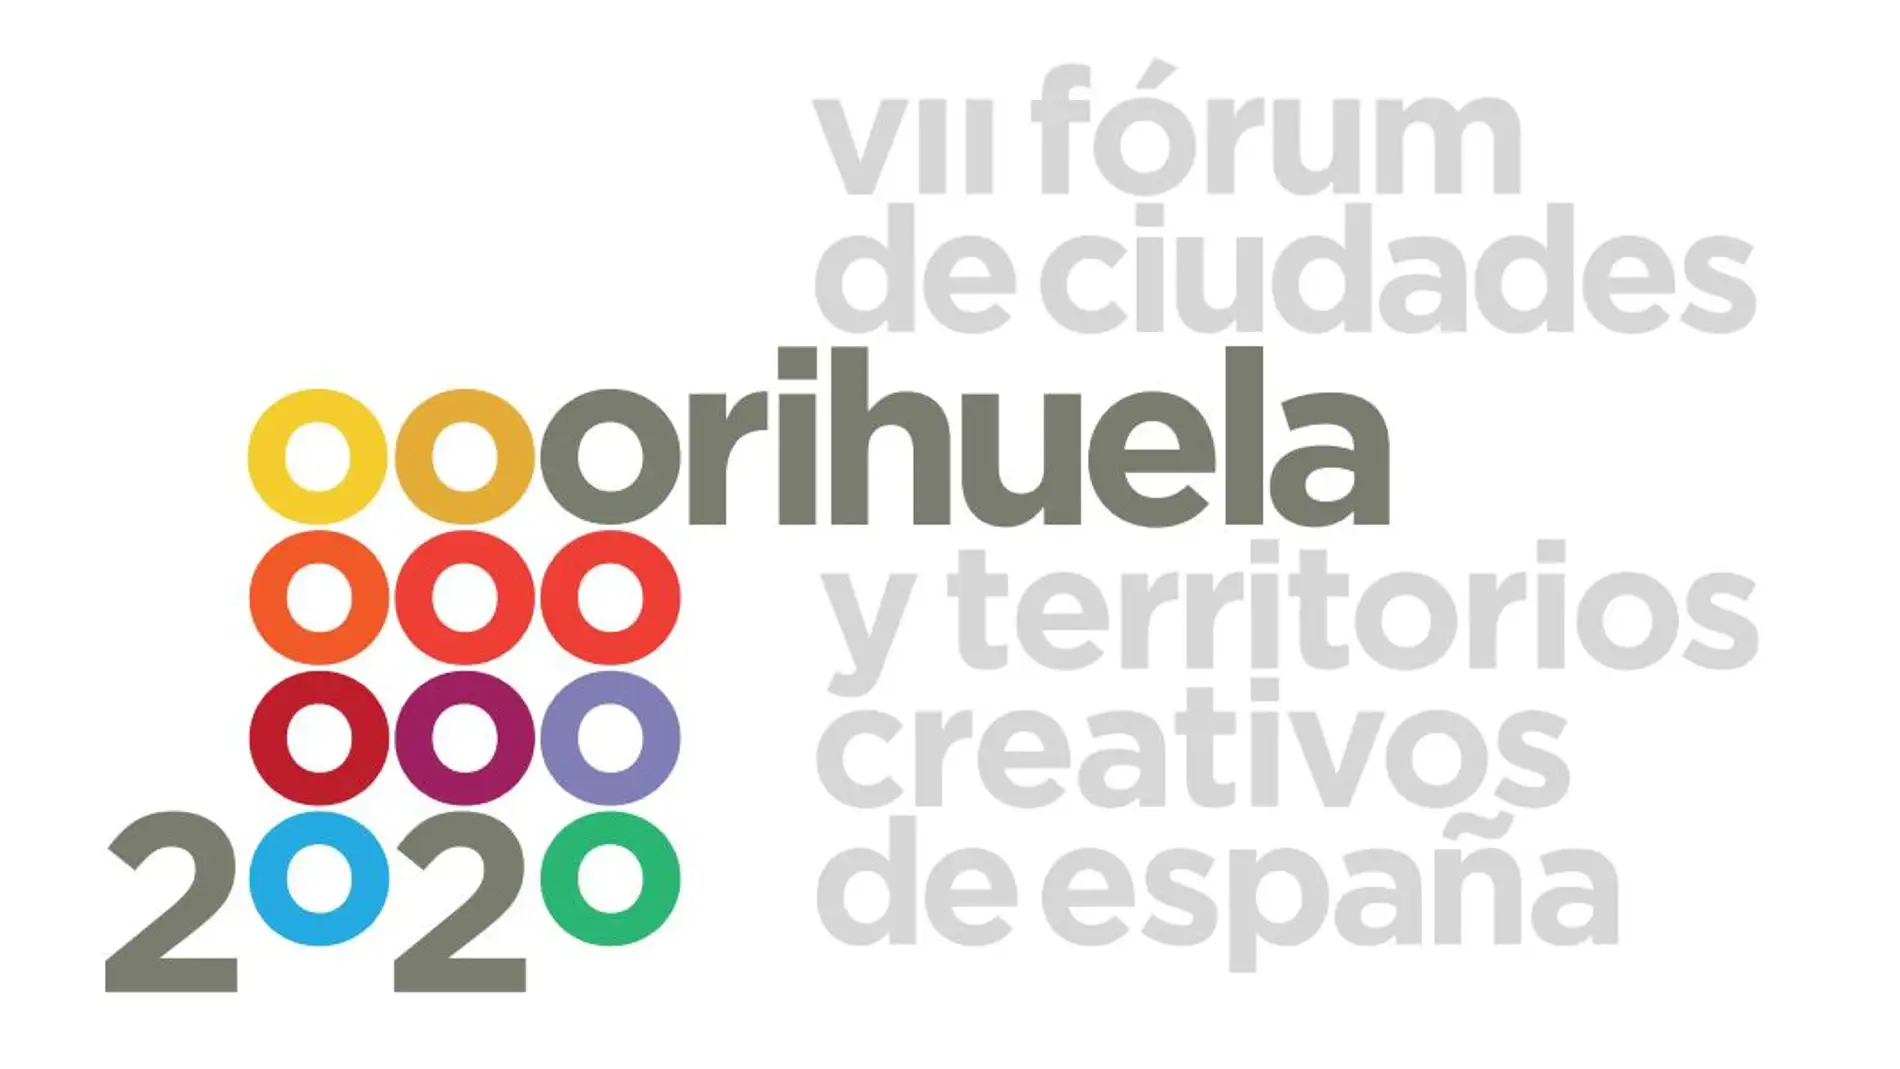 El VII Fórum de Ciudades y Territorios Creativos de España, también conocido como FÓRUM ORIHUELA 2020, se celebrará finalmente del 20 al 22 de Mayo de 2021  